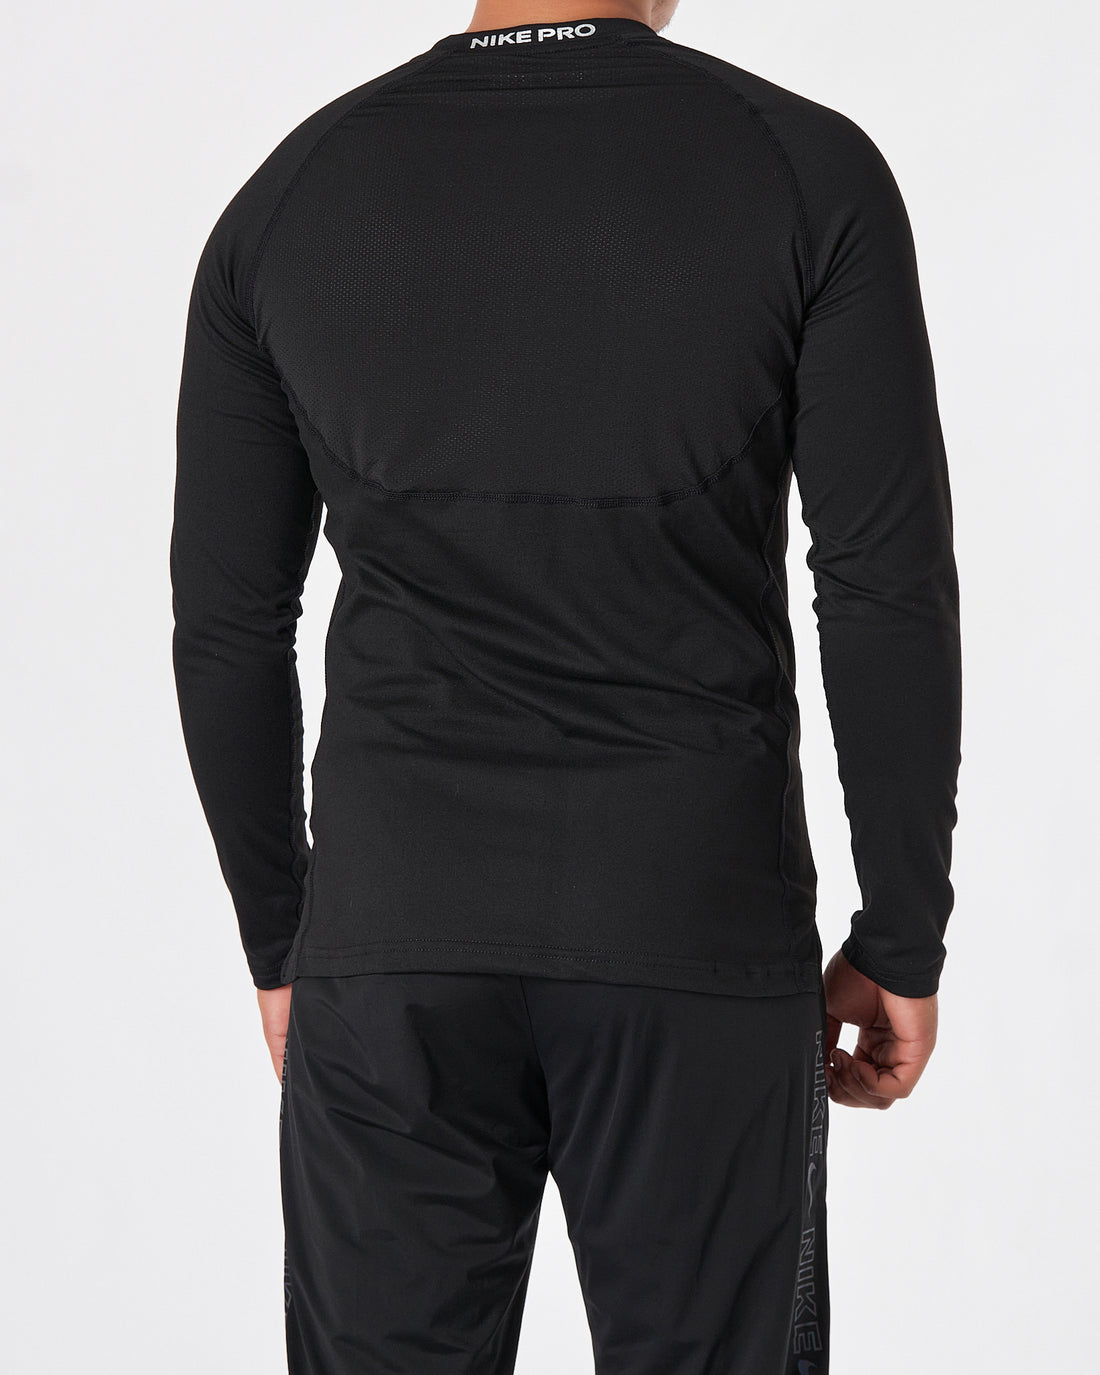 NIK Lightweight Logo Printed Men Black T-Shirt Long Sleeve 14.50